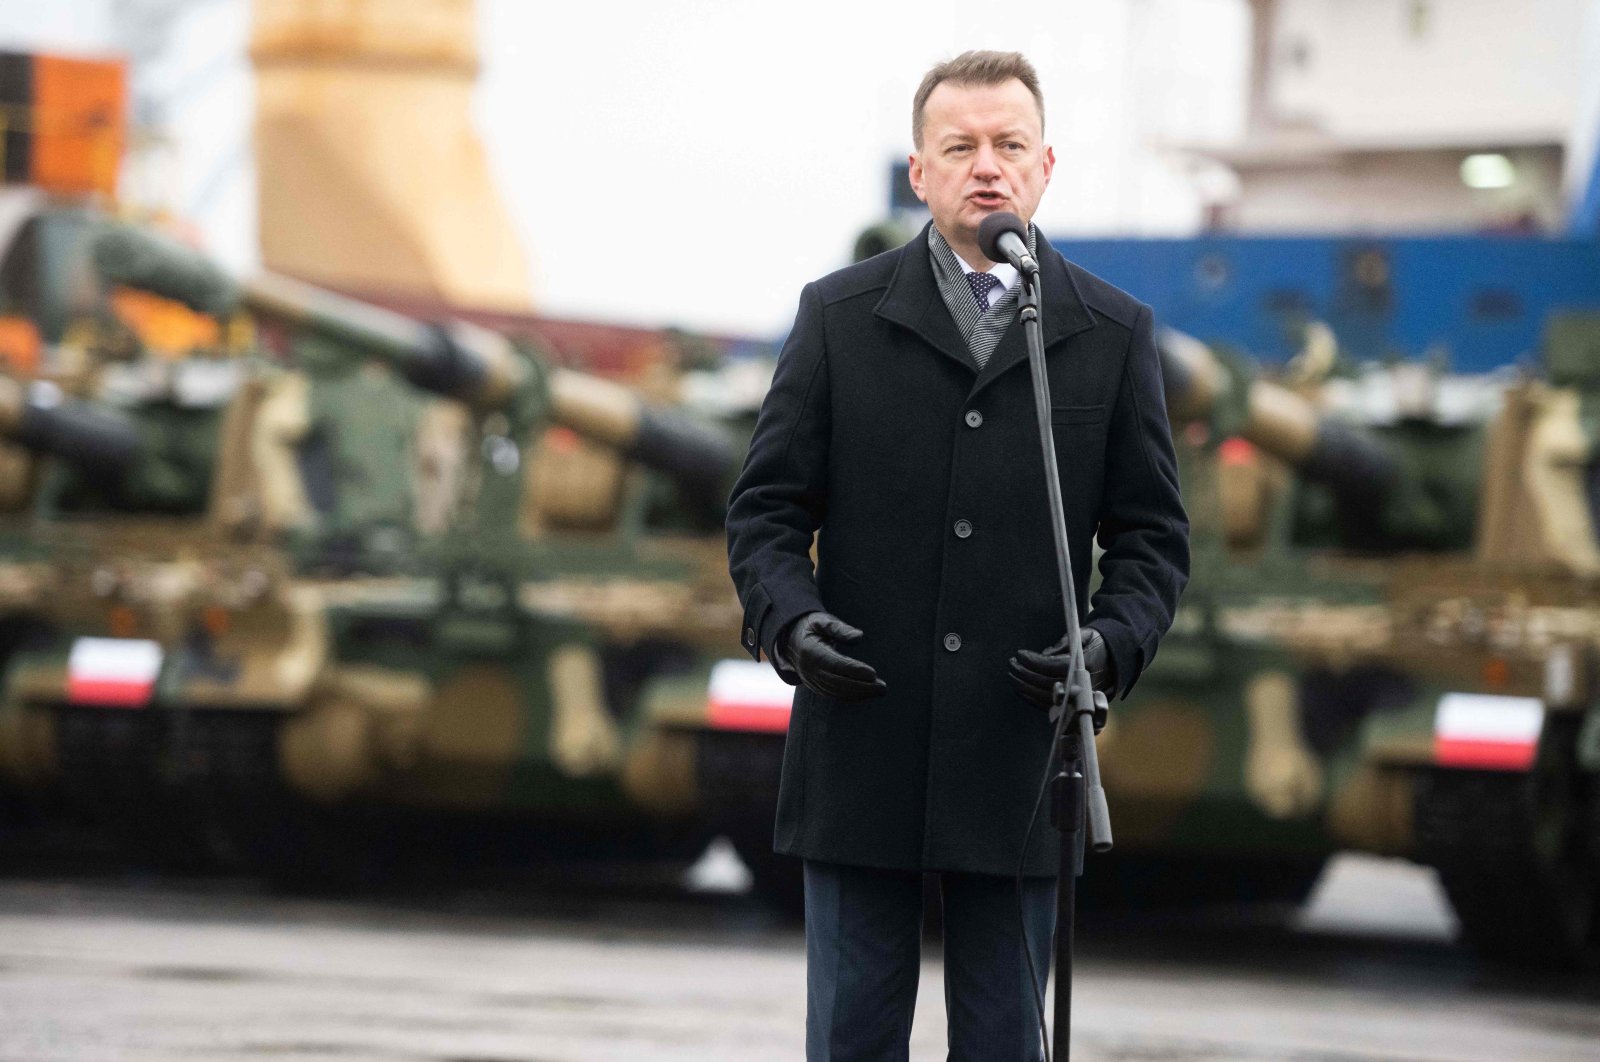 Polen ändert seinen Kurs und akzeptiert deutsche Patriot-Raketen